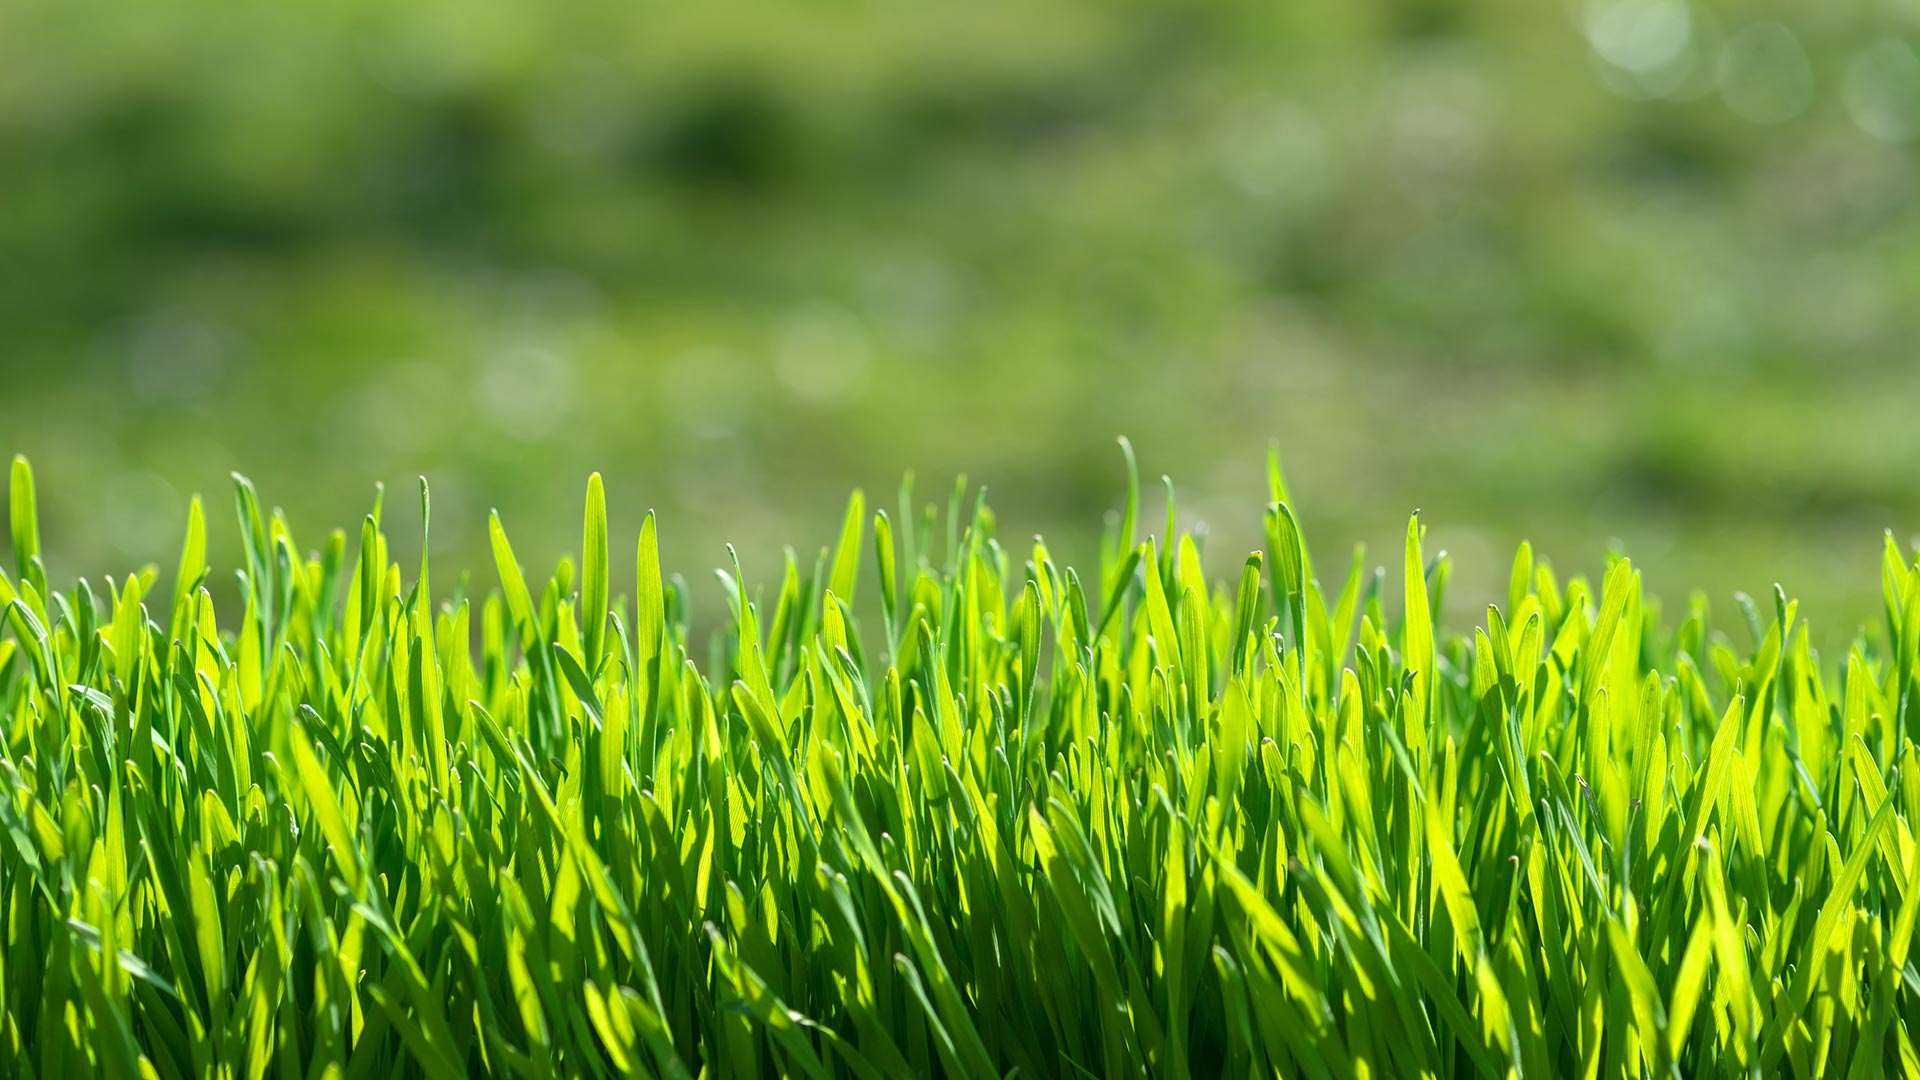 Grass length image near Bartlett, TN.